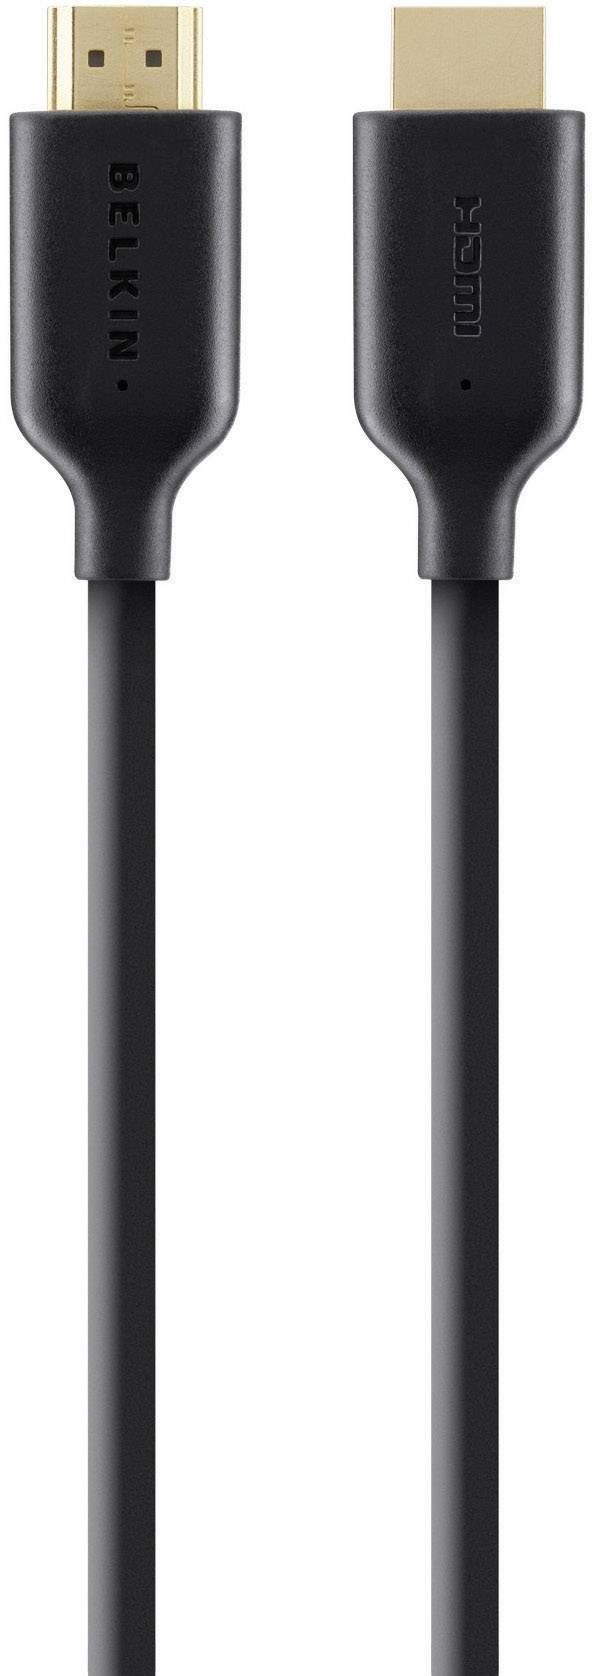 BELKIN HDMI Anschlusskabel [1x HDMI-Stecker - 1x HDMI-Stecker] 2 m Schwarz